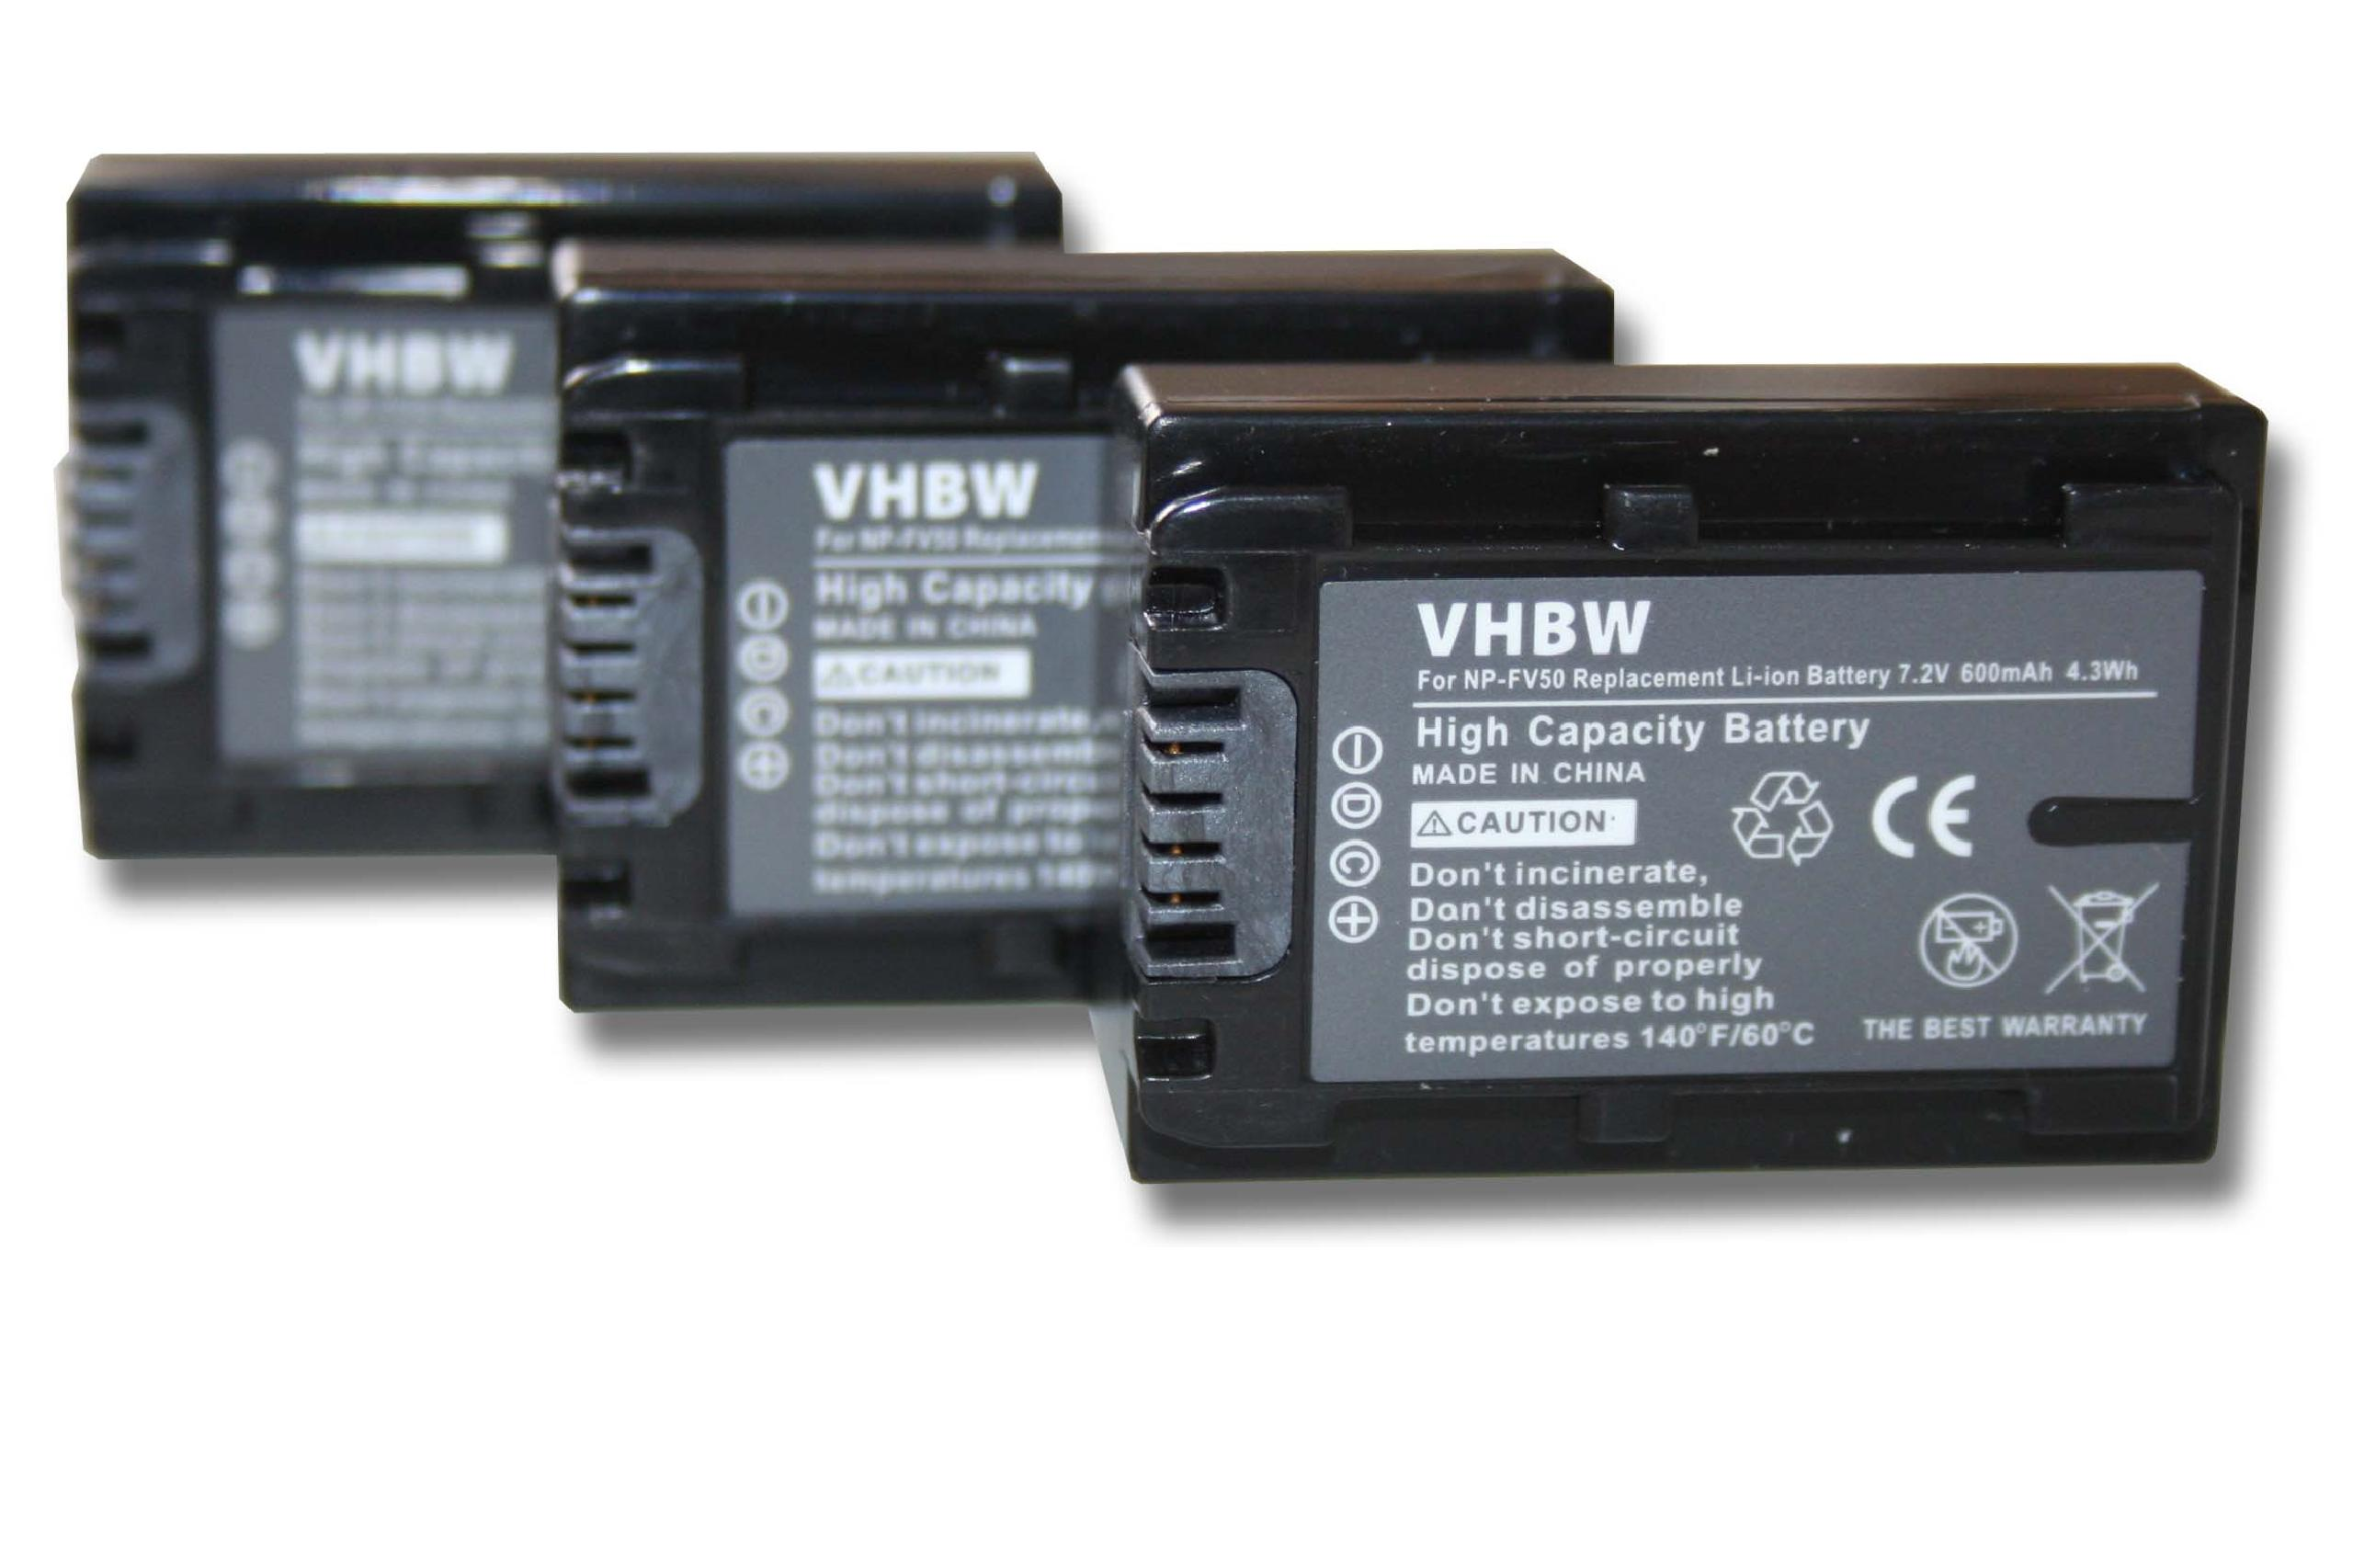 Sony VHBW HDR-CX210E, HDR-CX160E Videokamera, 7.2 600 - HDR-CX kompatibel HDR-CX200E, HDR-CX190E, mit Serie Volt, Li-Ion Akku